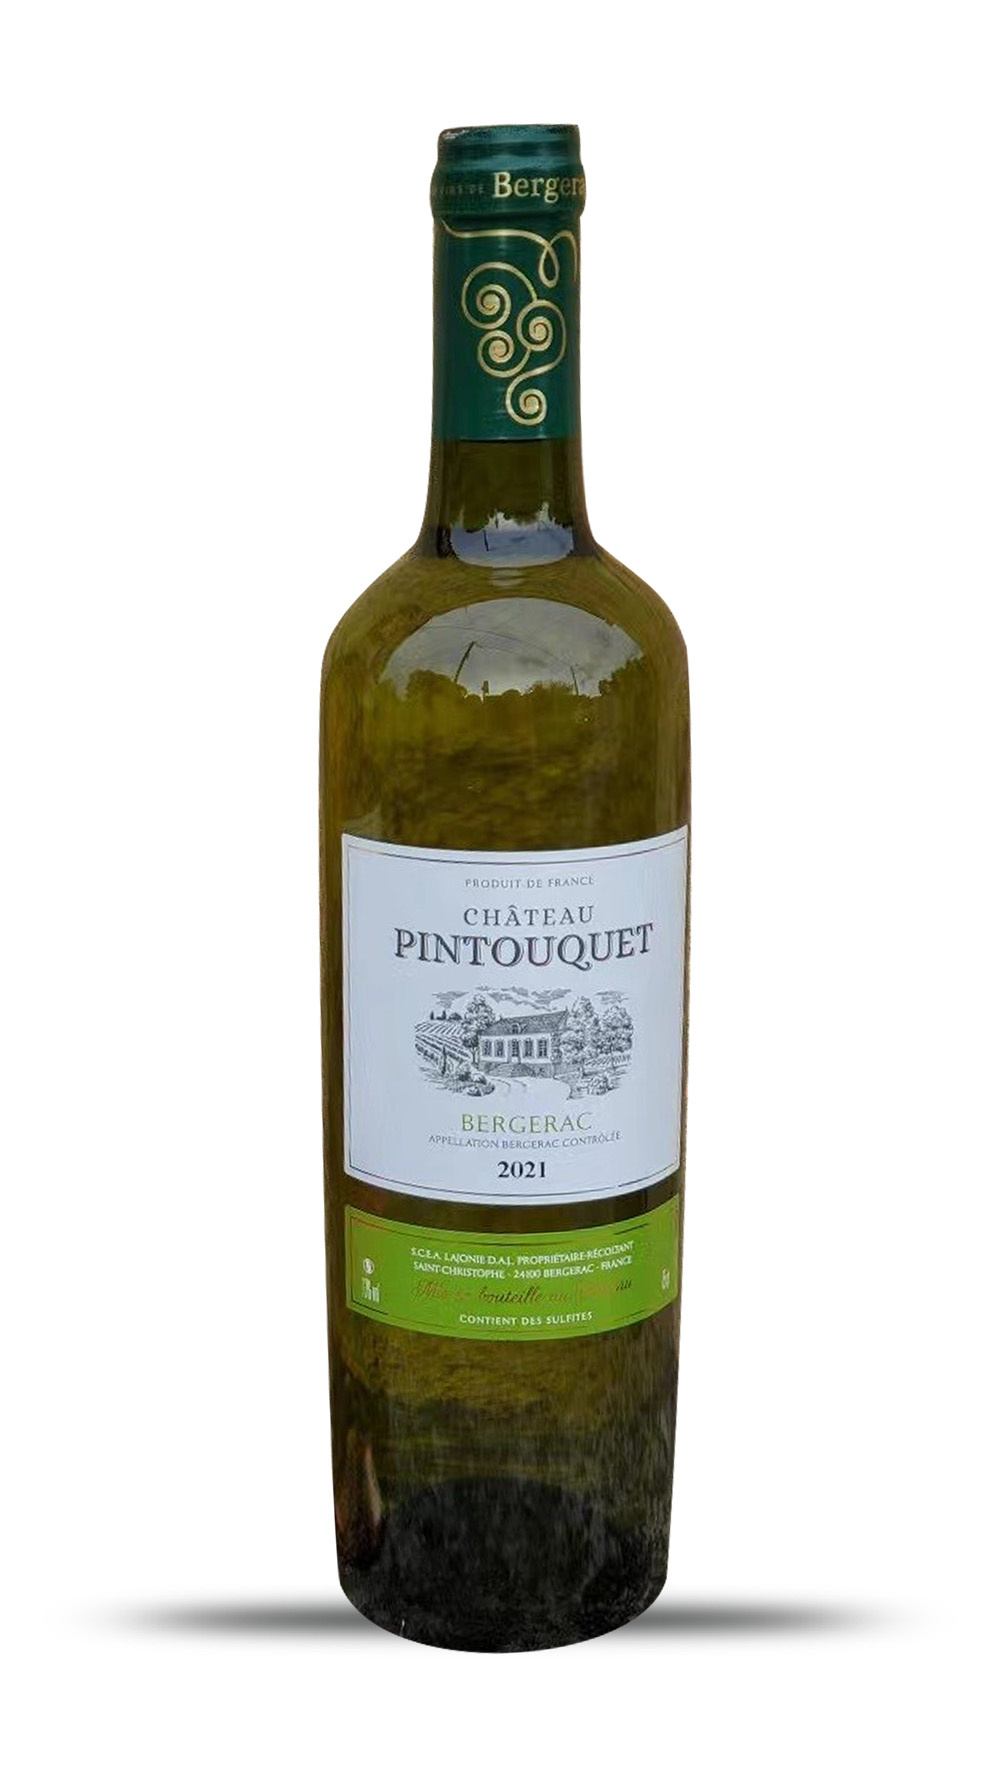 Pintouquet Bergerac blanc 2021 - - online Französischer Weißwein Online-Shop Wineful Wein kaufen